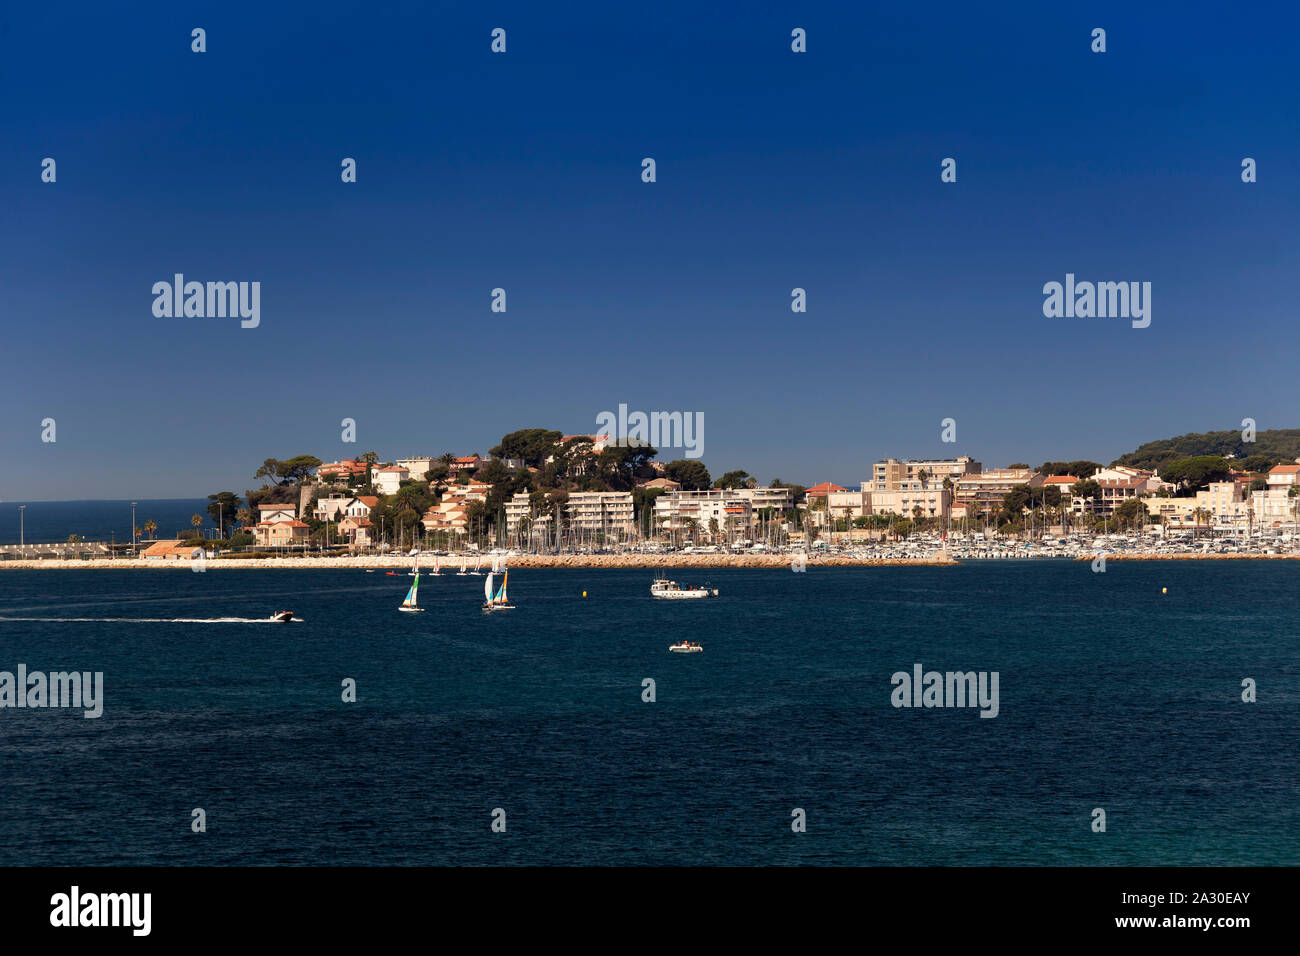 Küstenabschnitt mit Hotelanlagen an der  Bale de Bandol, Bucht von Bandol, Alpes-Maritimes, Cote d'Azur, Südfrankreich, Frankreich, Europa| Coastline Stock Photo